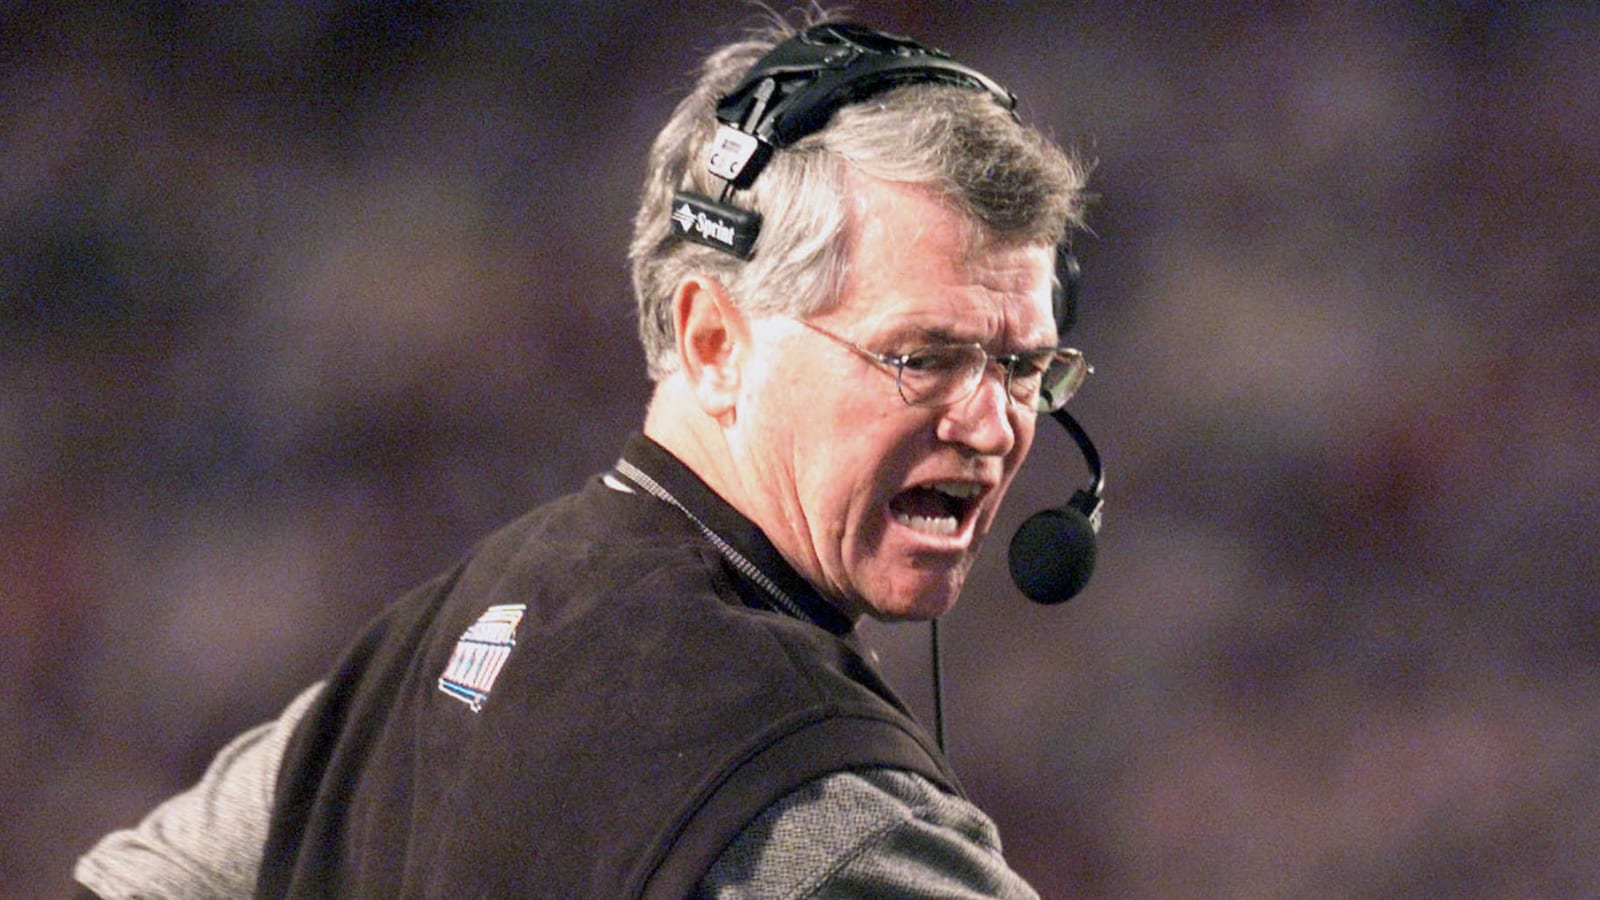 Former NFL head coach Dan Reeves dies at age 77